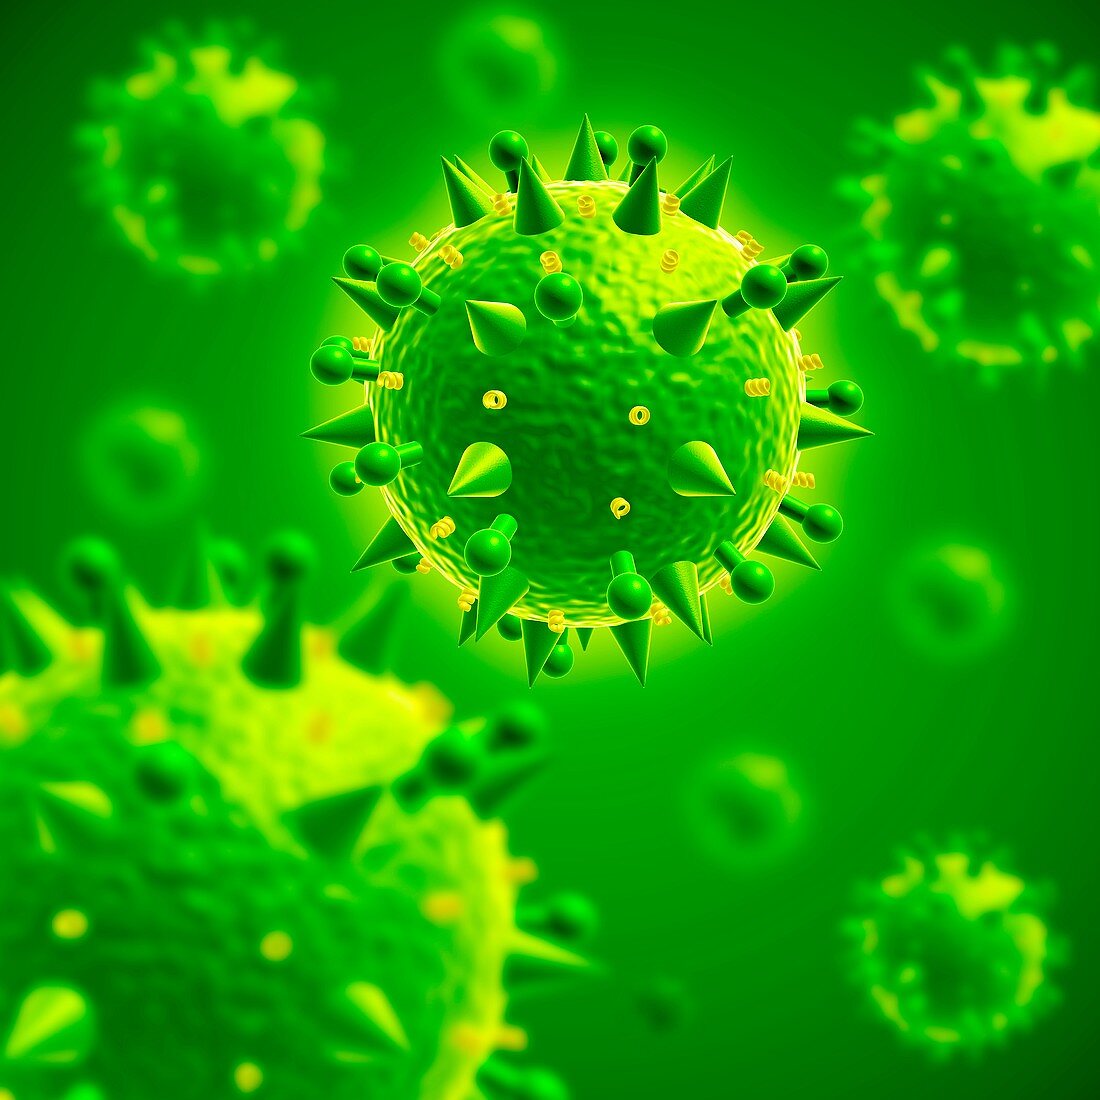 Influenza virus particles,illustration